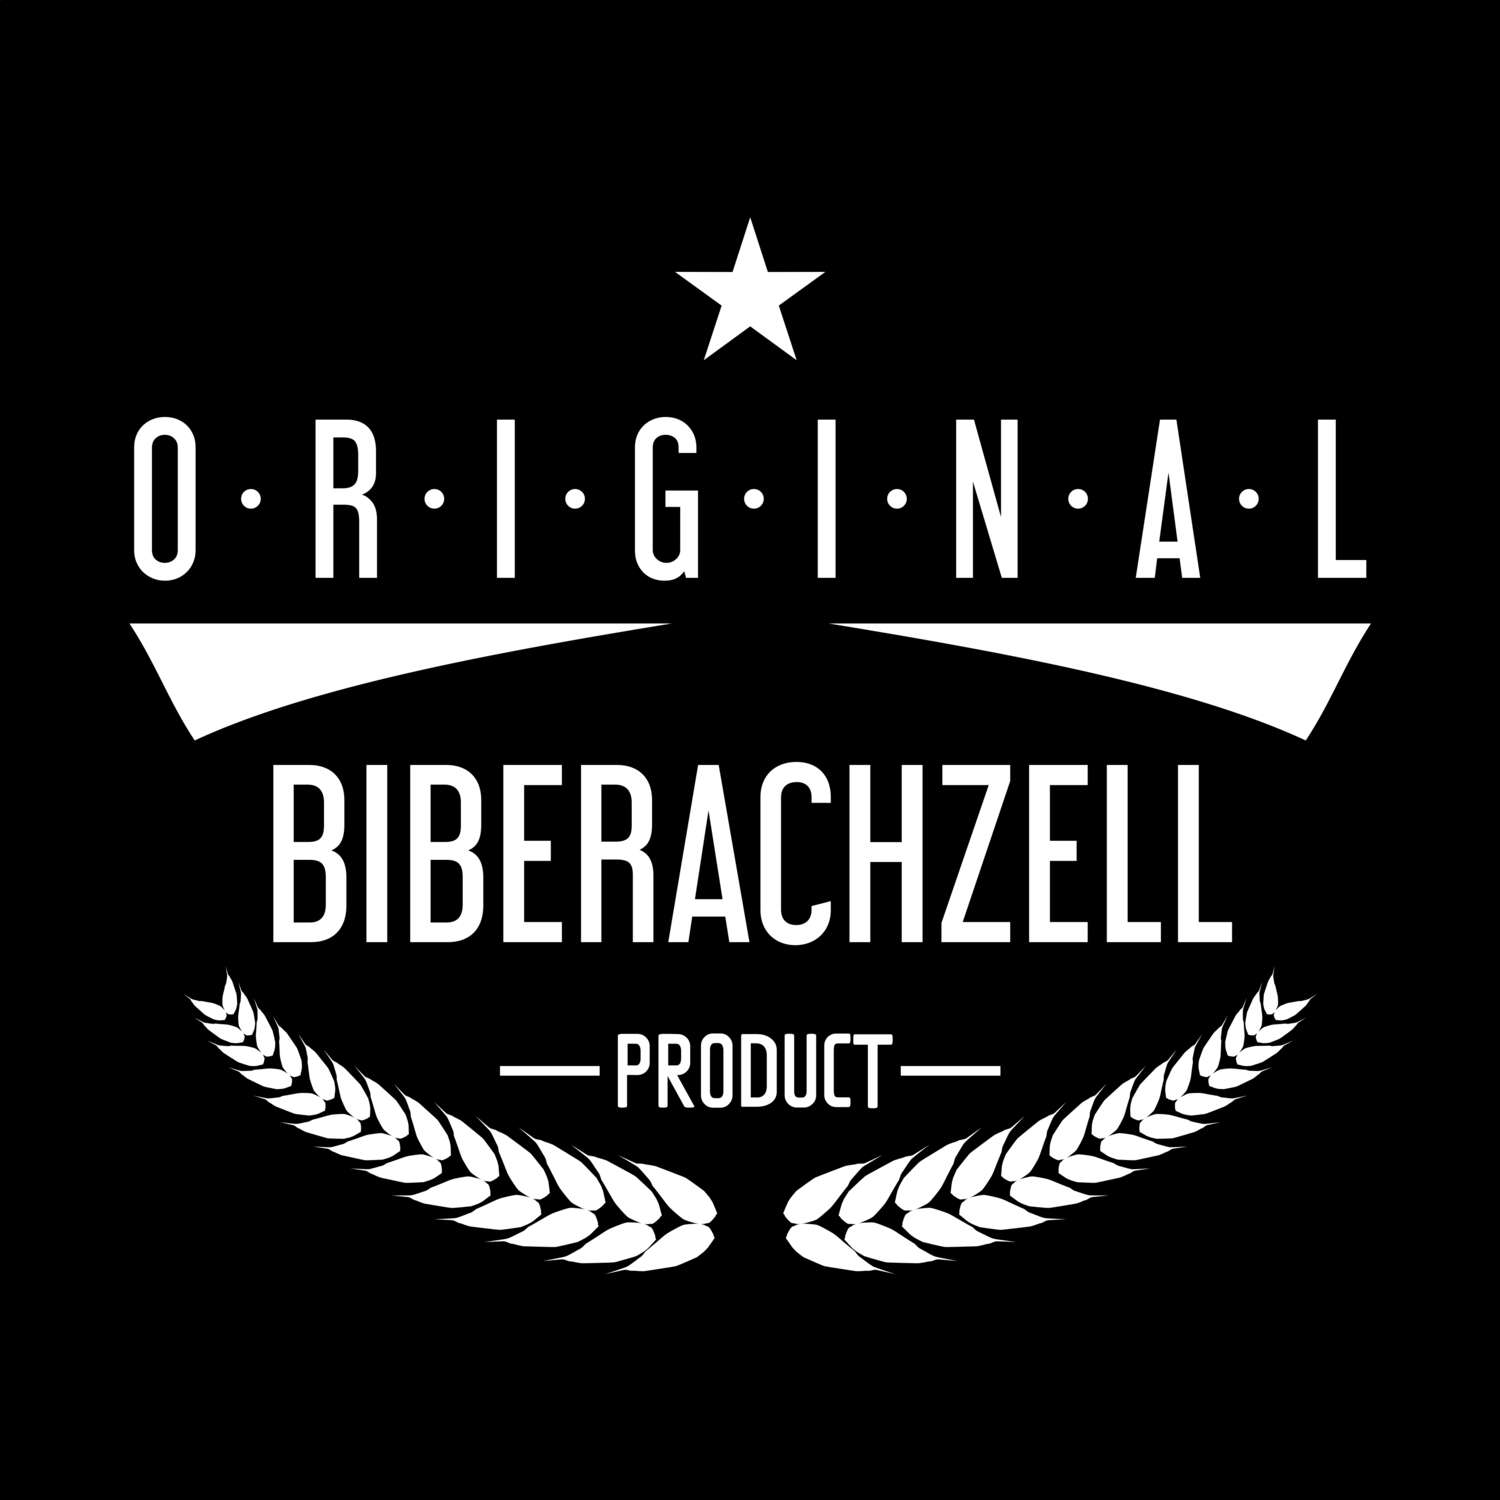 Biberachzell T-Shirt »Original Product«